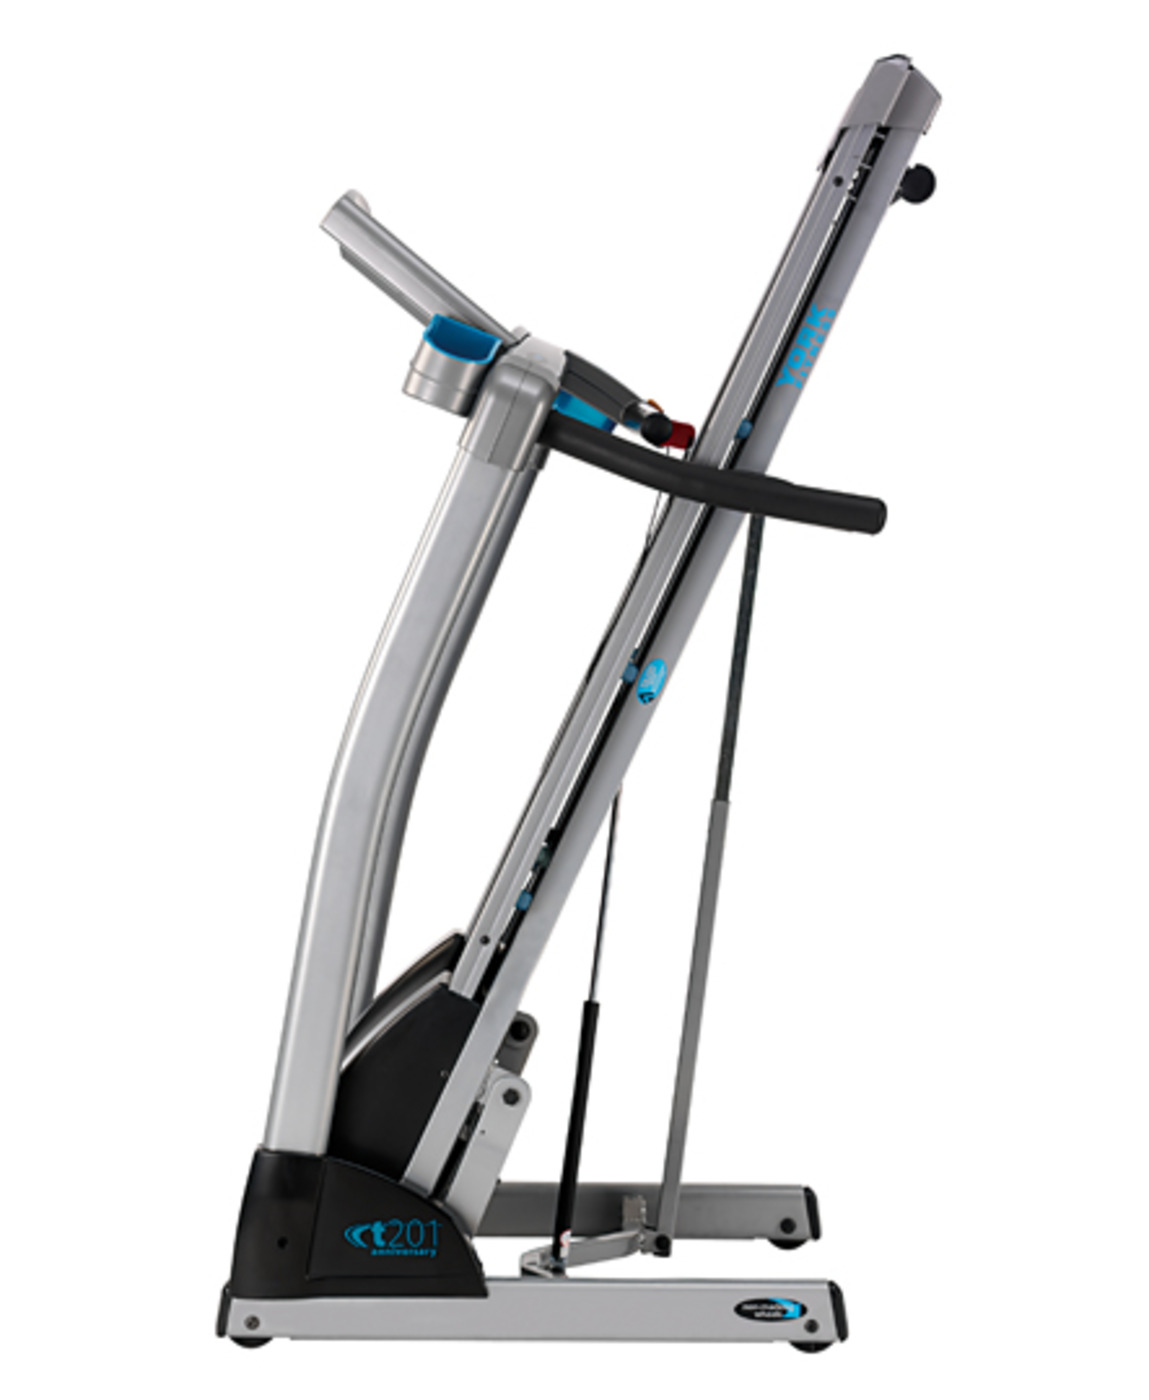 Anniversary Series T201 Treadmill